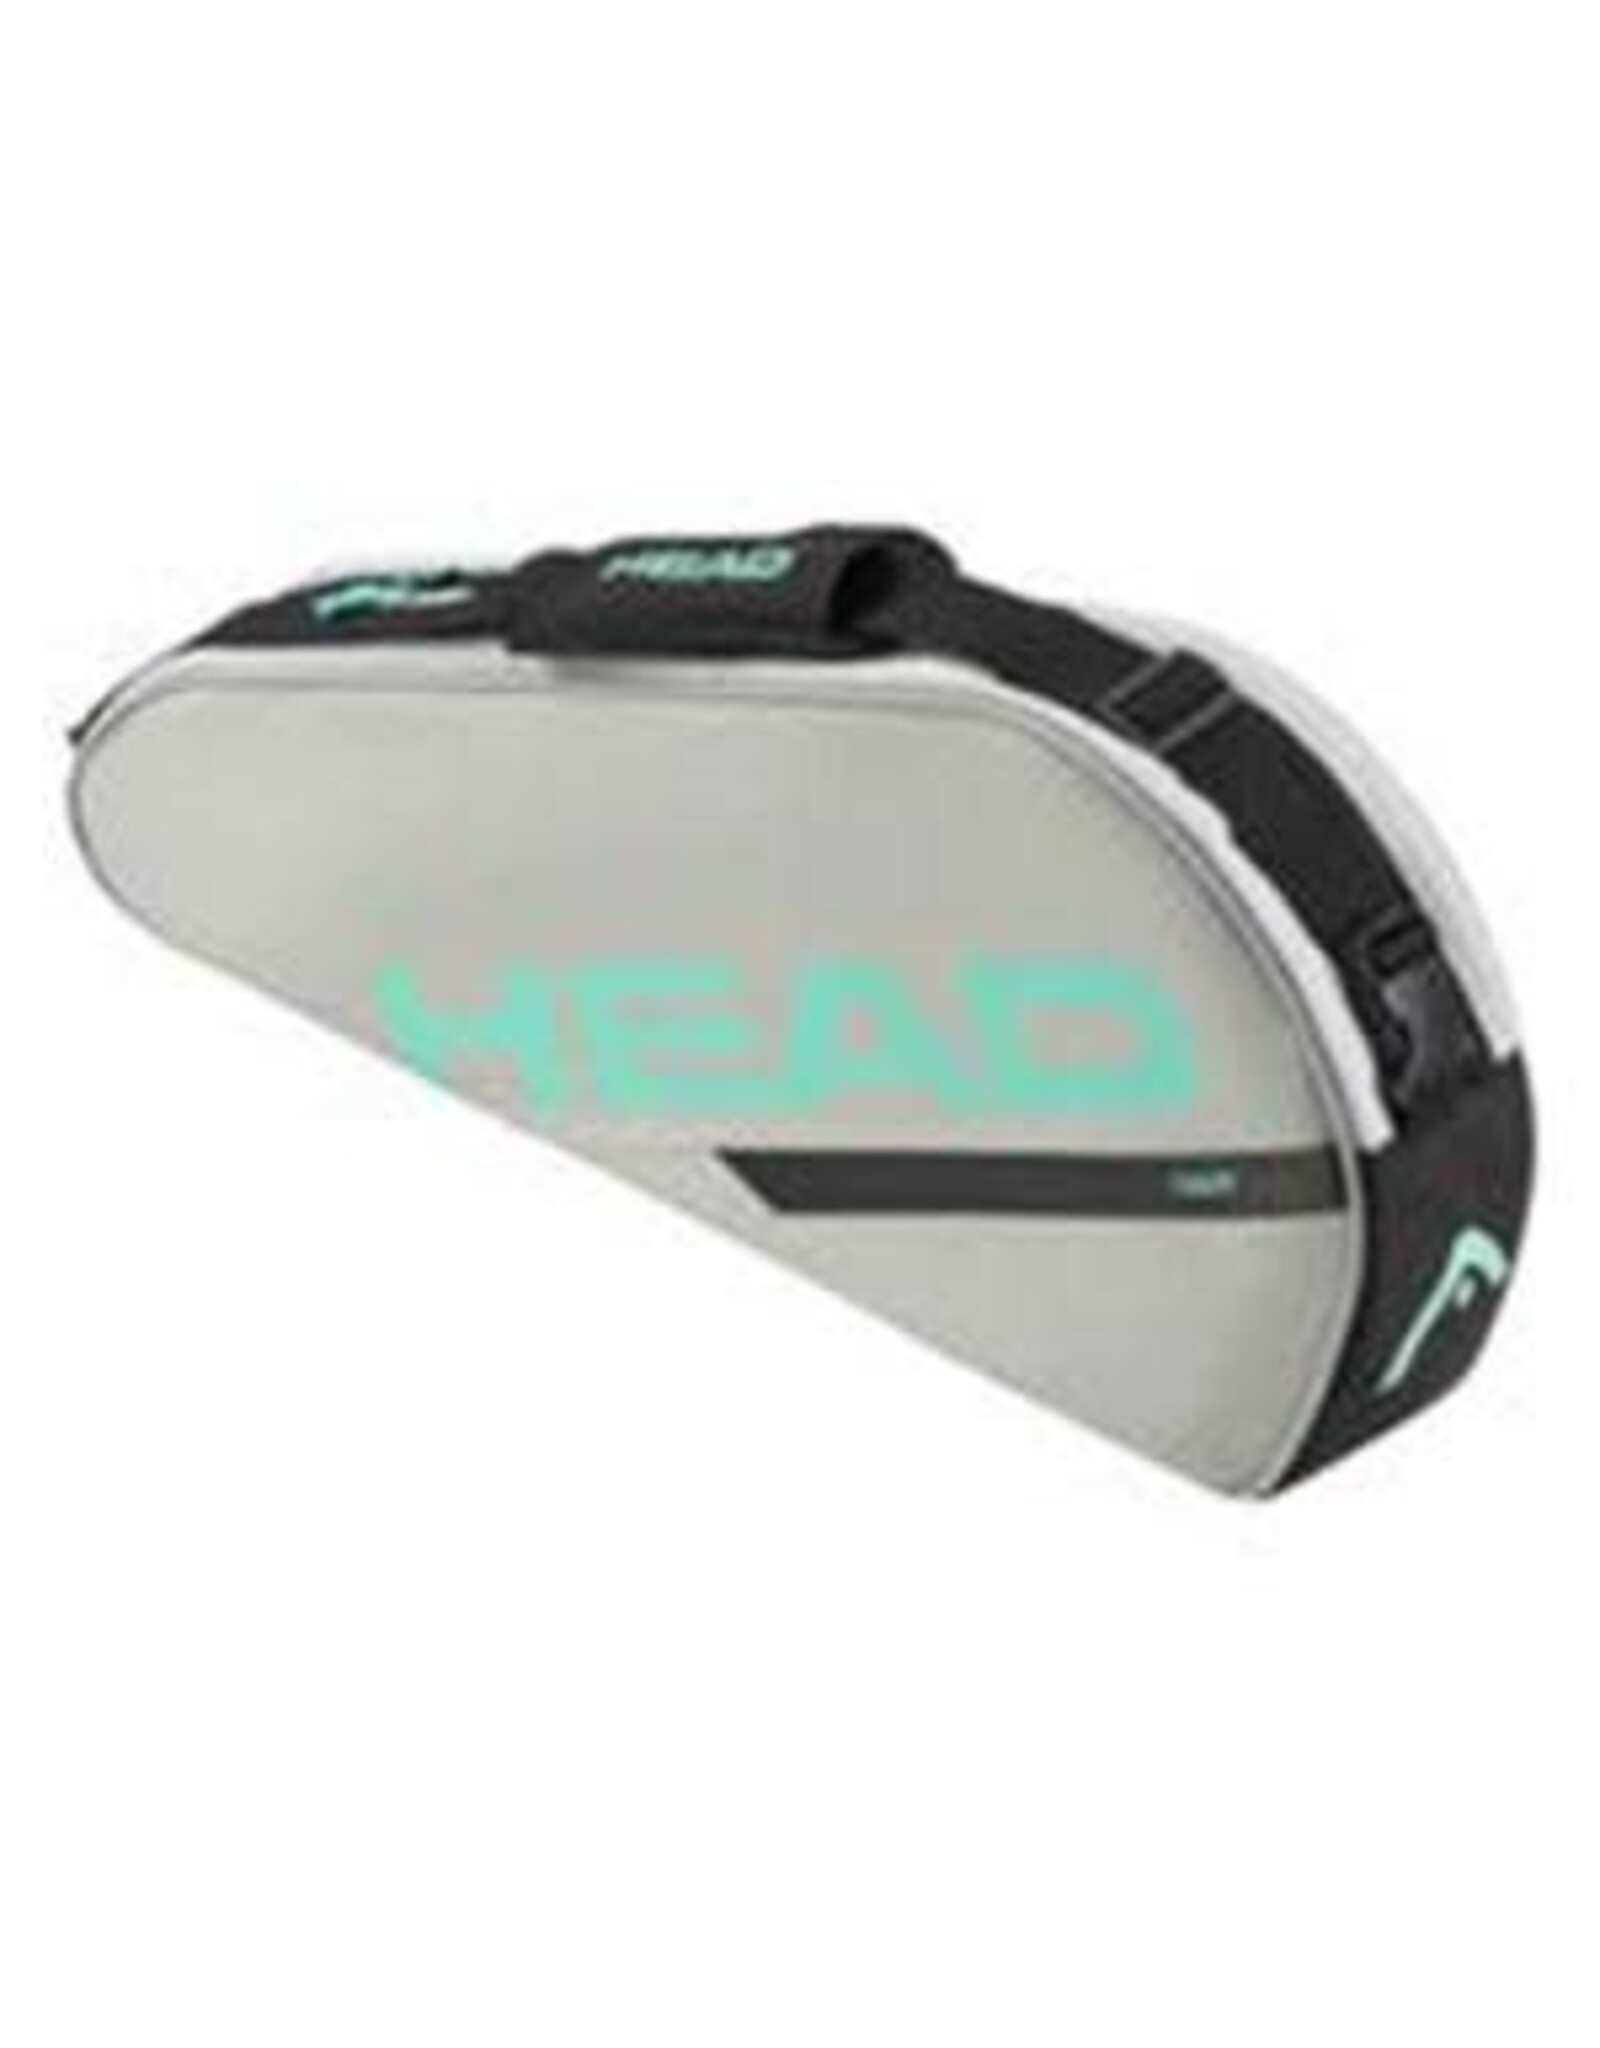 Head Head Tour Racquet Bag S CCTE